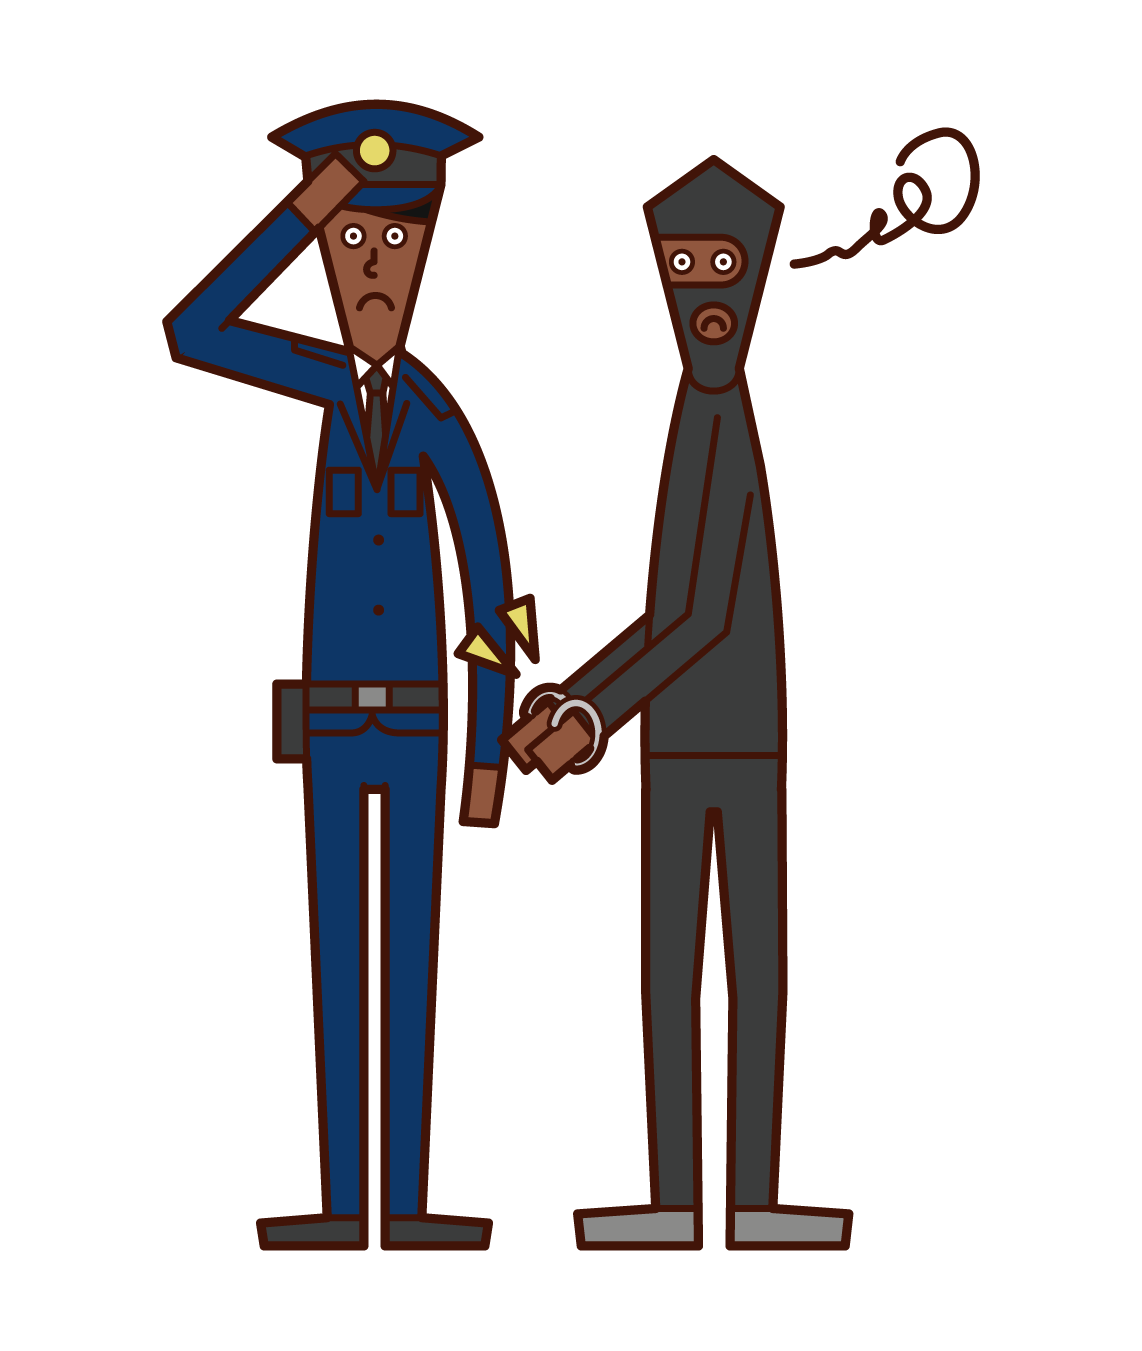 犯人を逮捕する警察官 男性 のイラスト フリーイラスト素材 Kukukeke ククケケ